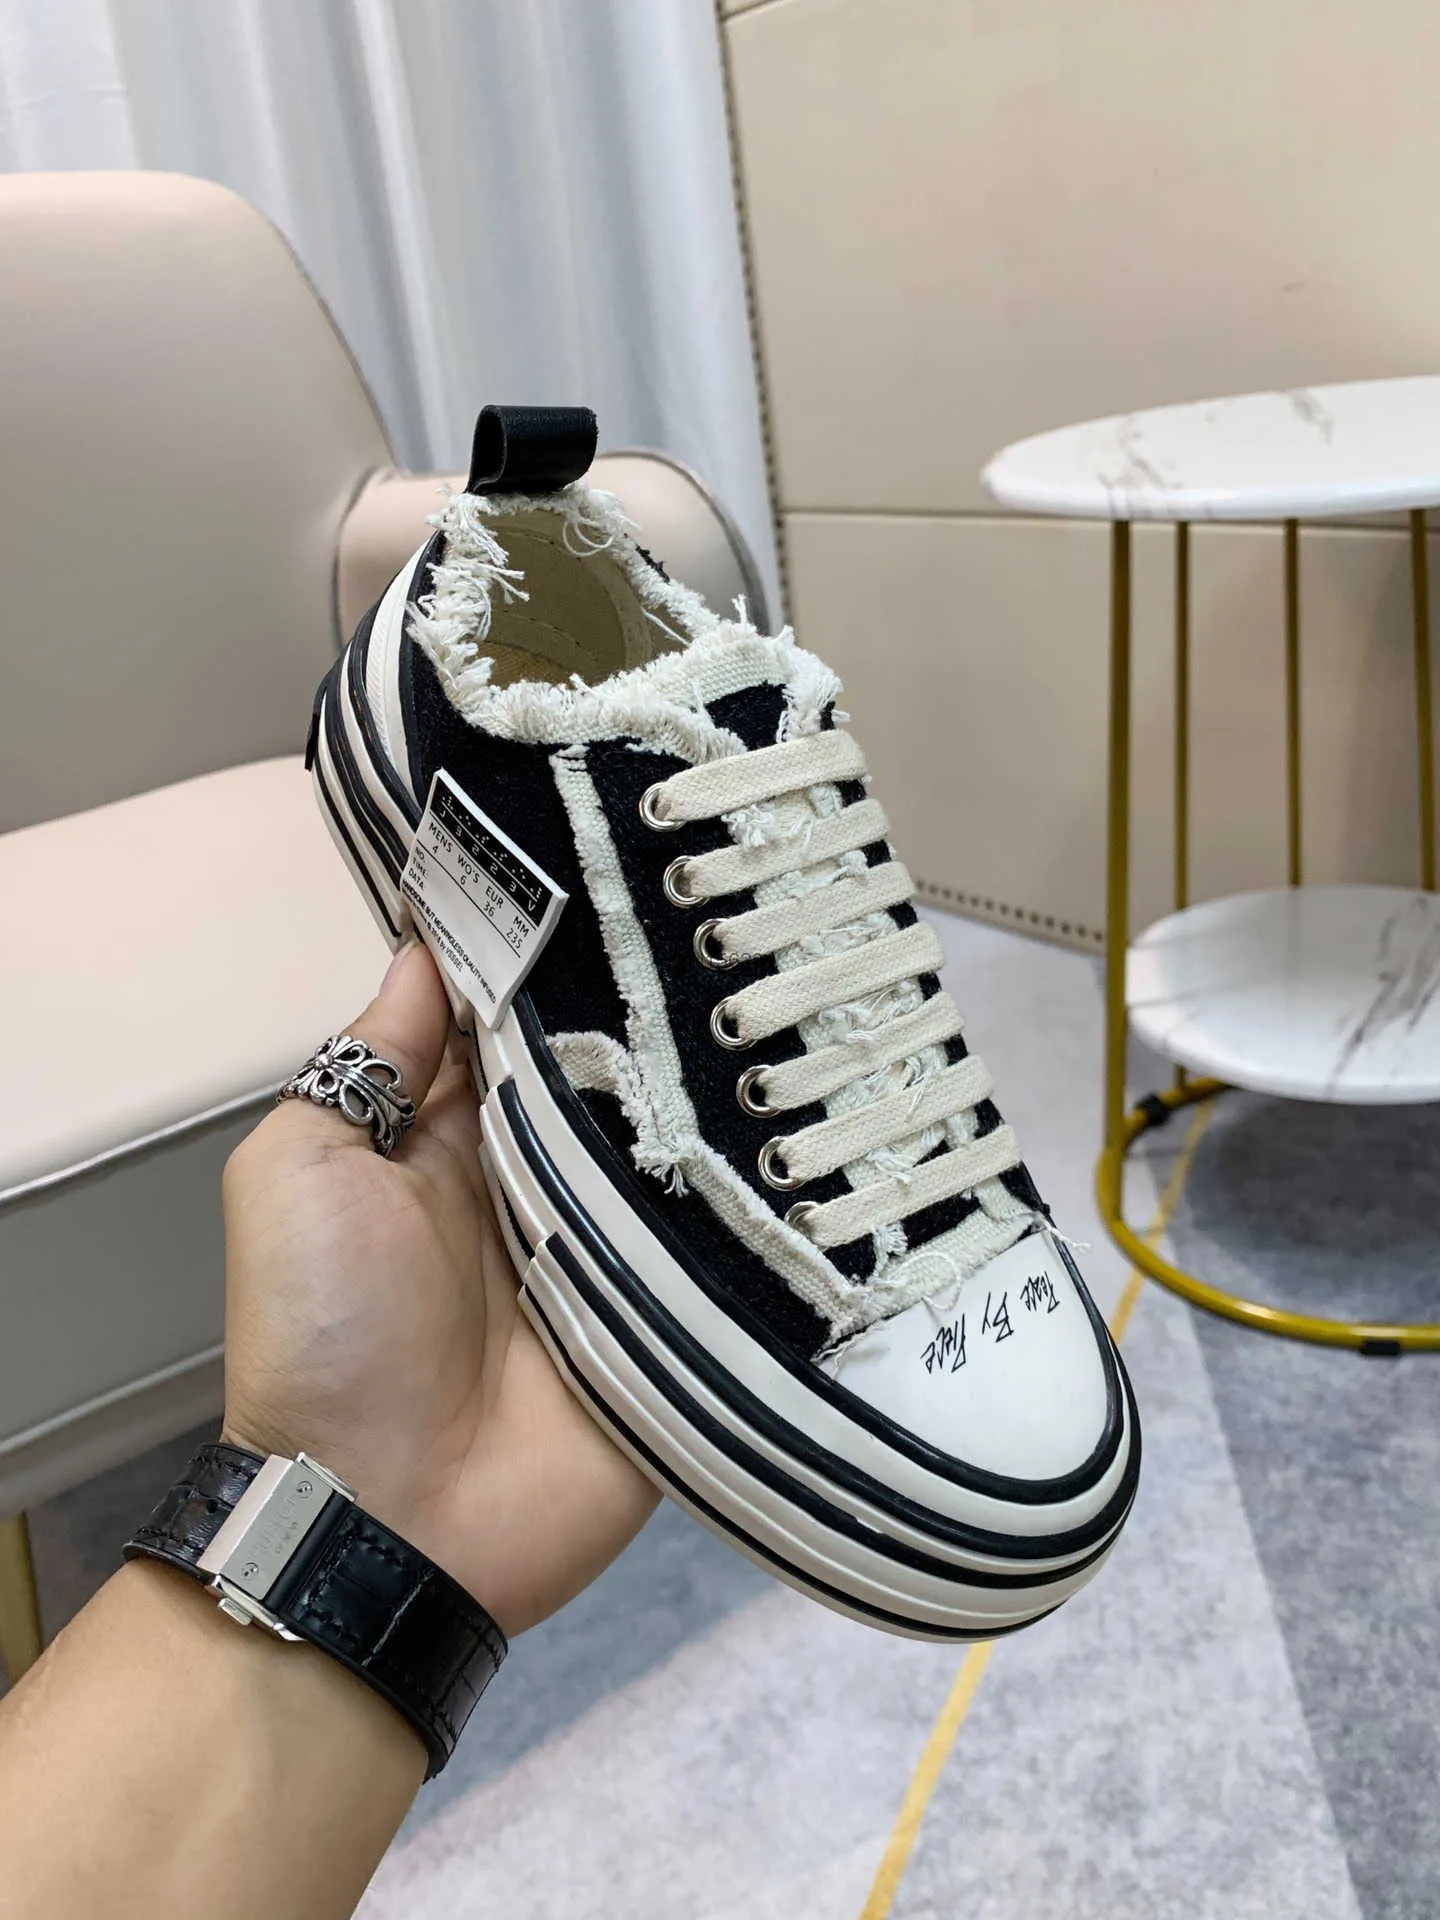 Xvessels/stursel Dunks عرض أحذية الأزياء غير الرسمية المصمم الفاخرة الدانتيل الأسود أبيض باللون الأحمر الأصفر المطبوع حلوى الوردي فانس وو.